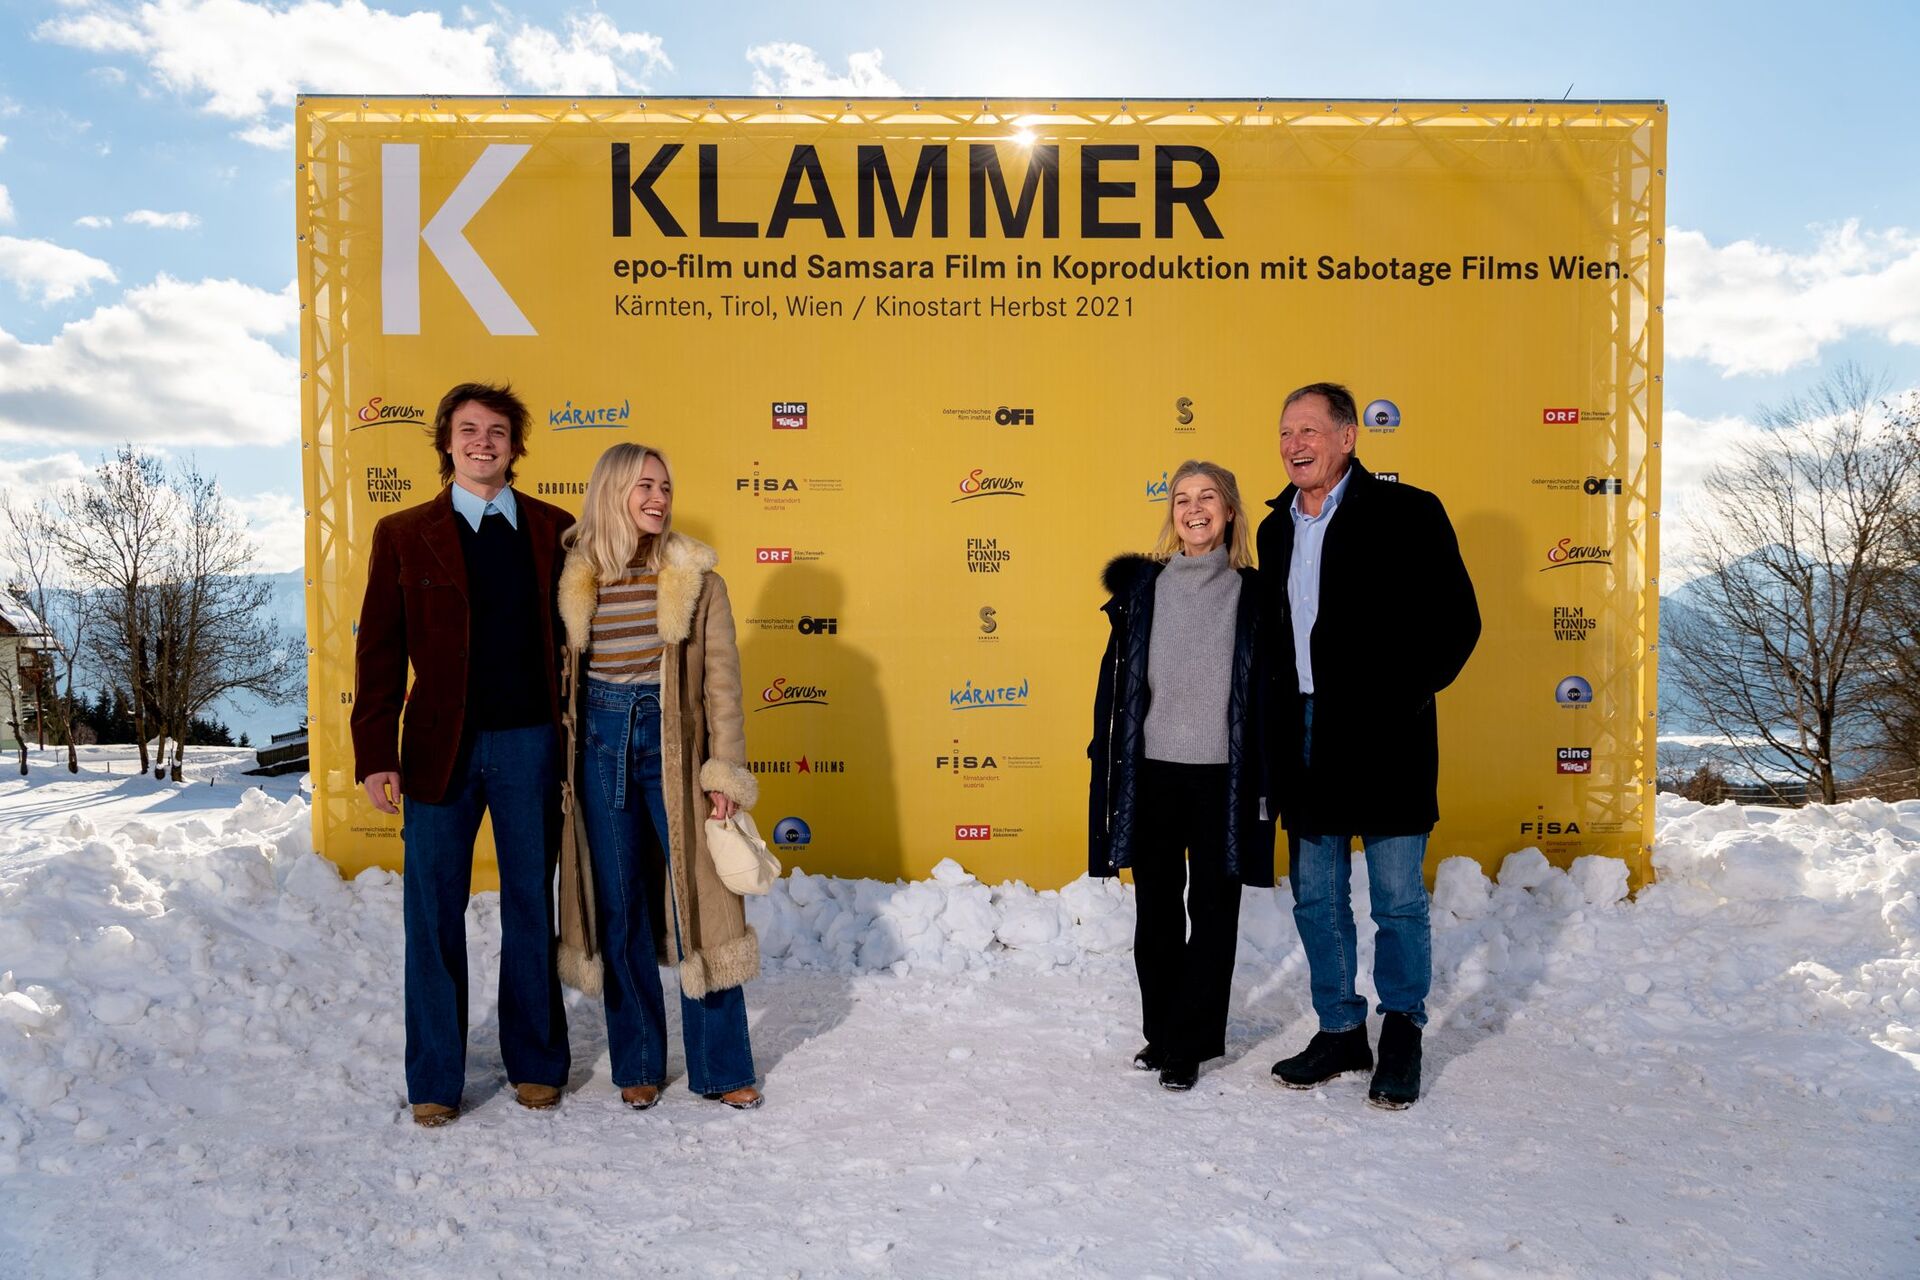  Franz Klammery su esposa Eva con los dos actores Julian Waldner y Valerie Huber.